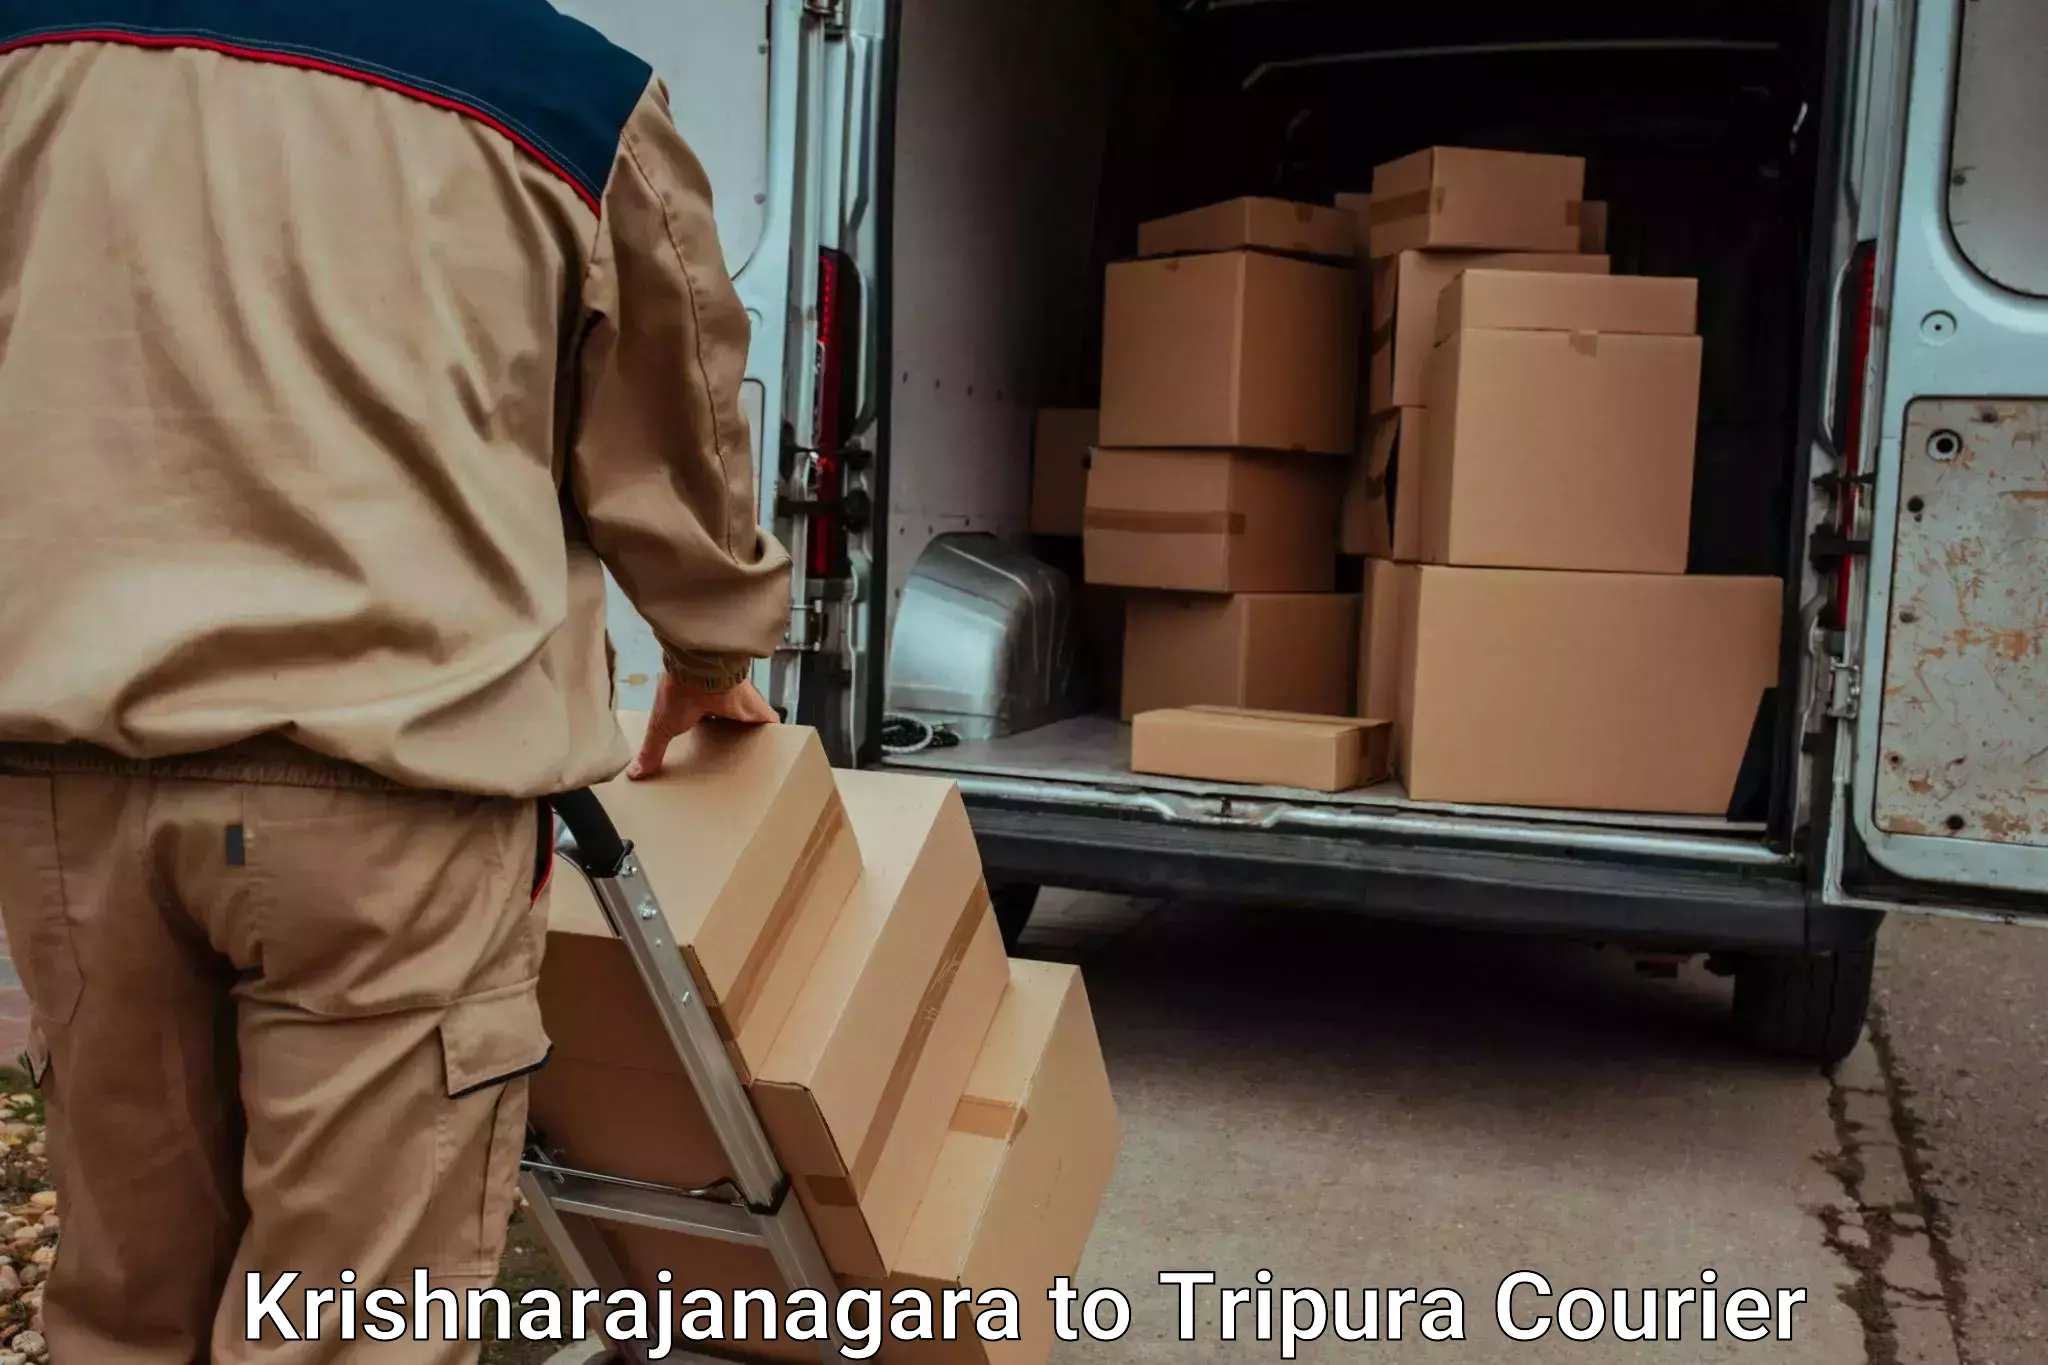 Luggage dispatch service Krishnarajanagara to Kailashahar